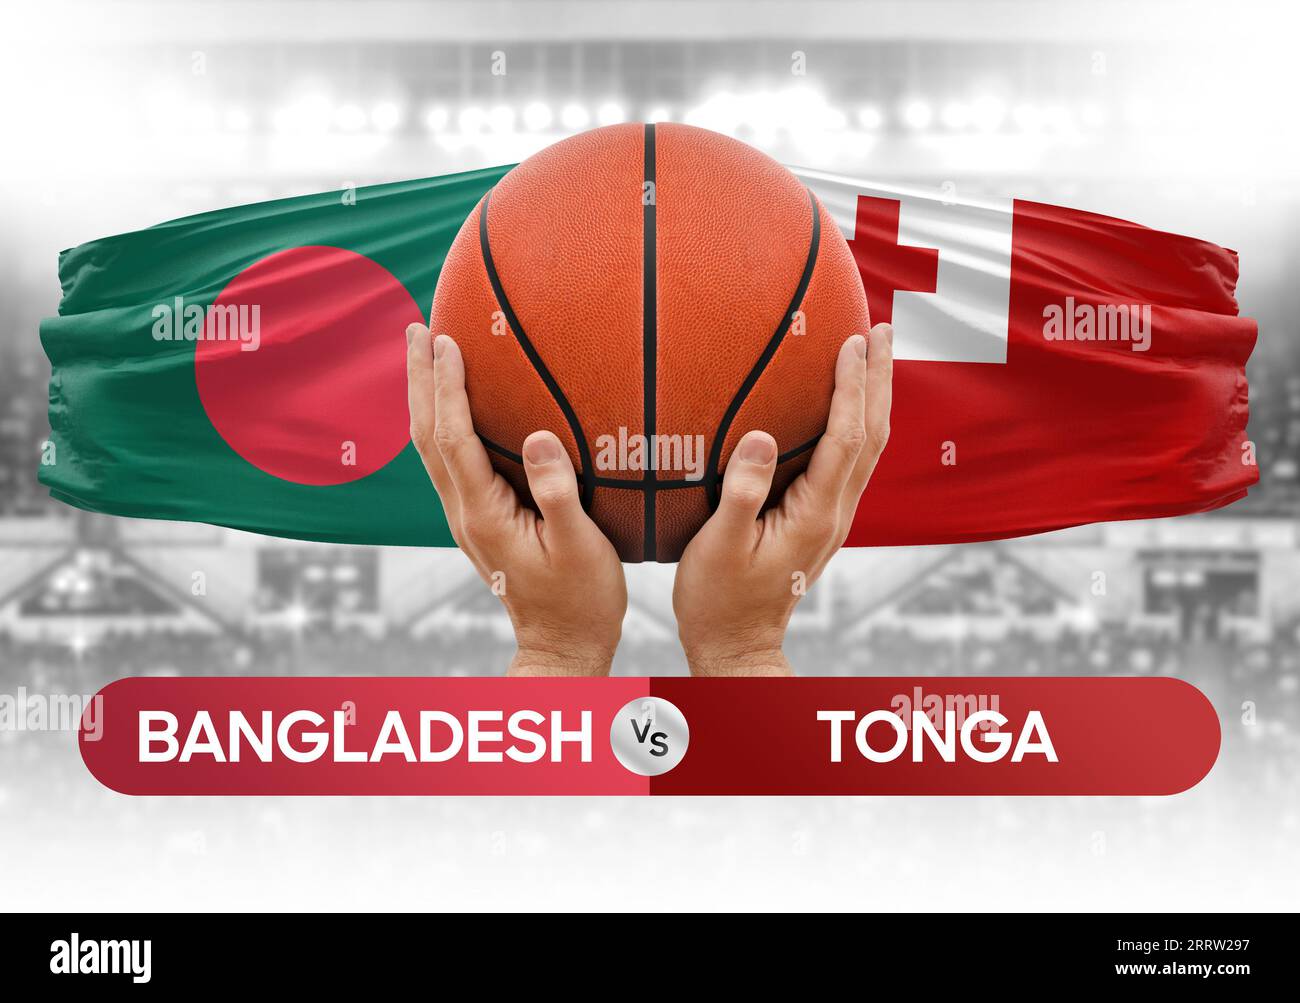 Bangladesch gegen Tonga Basketball-Nationalmannschaften Basketballspiel Wettbewerb Cup Konzept Bild Stockfoto